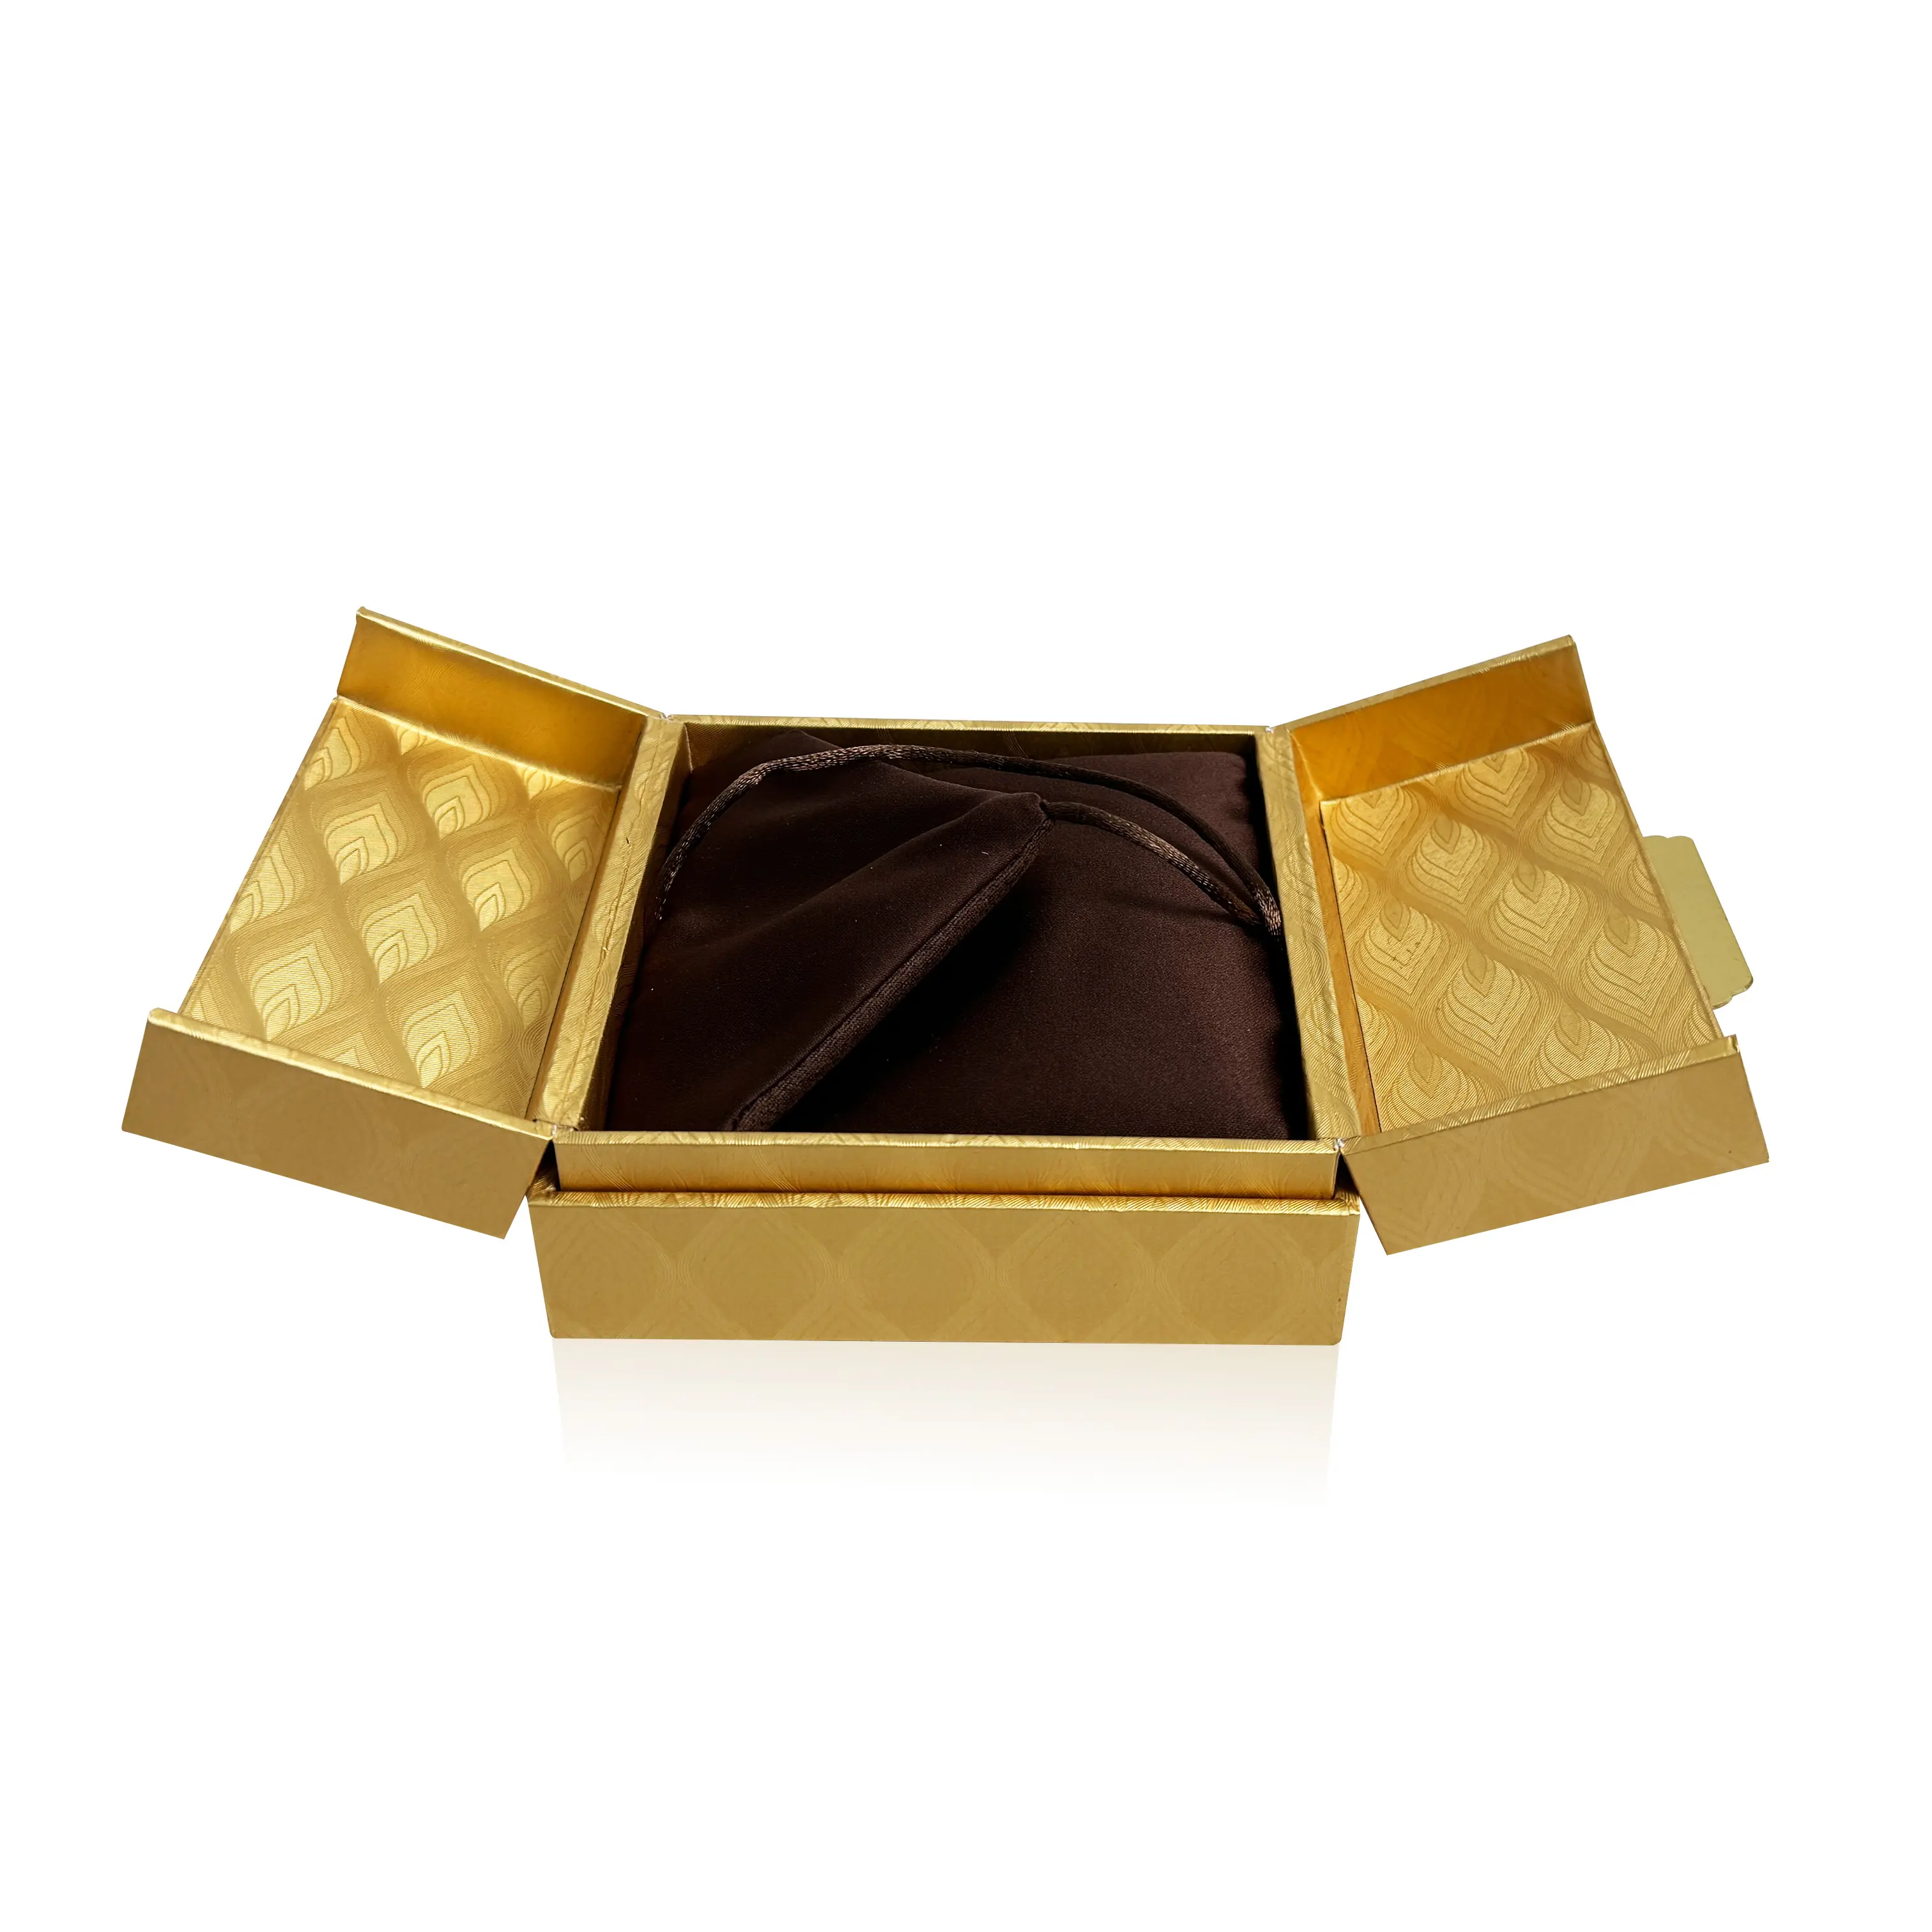 Kotak perhiasan hadiah pintu ganda elegan kotak dasar dan tutup desain ukiran berongga emas cetak Logo kustom